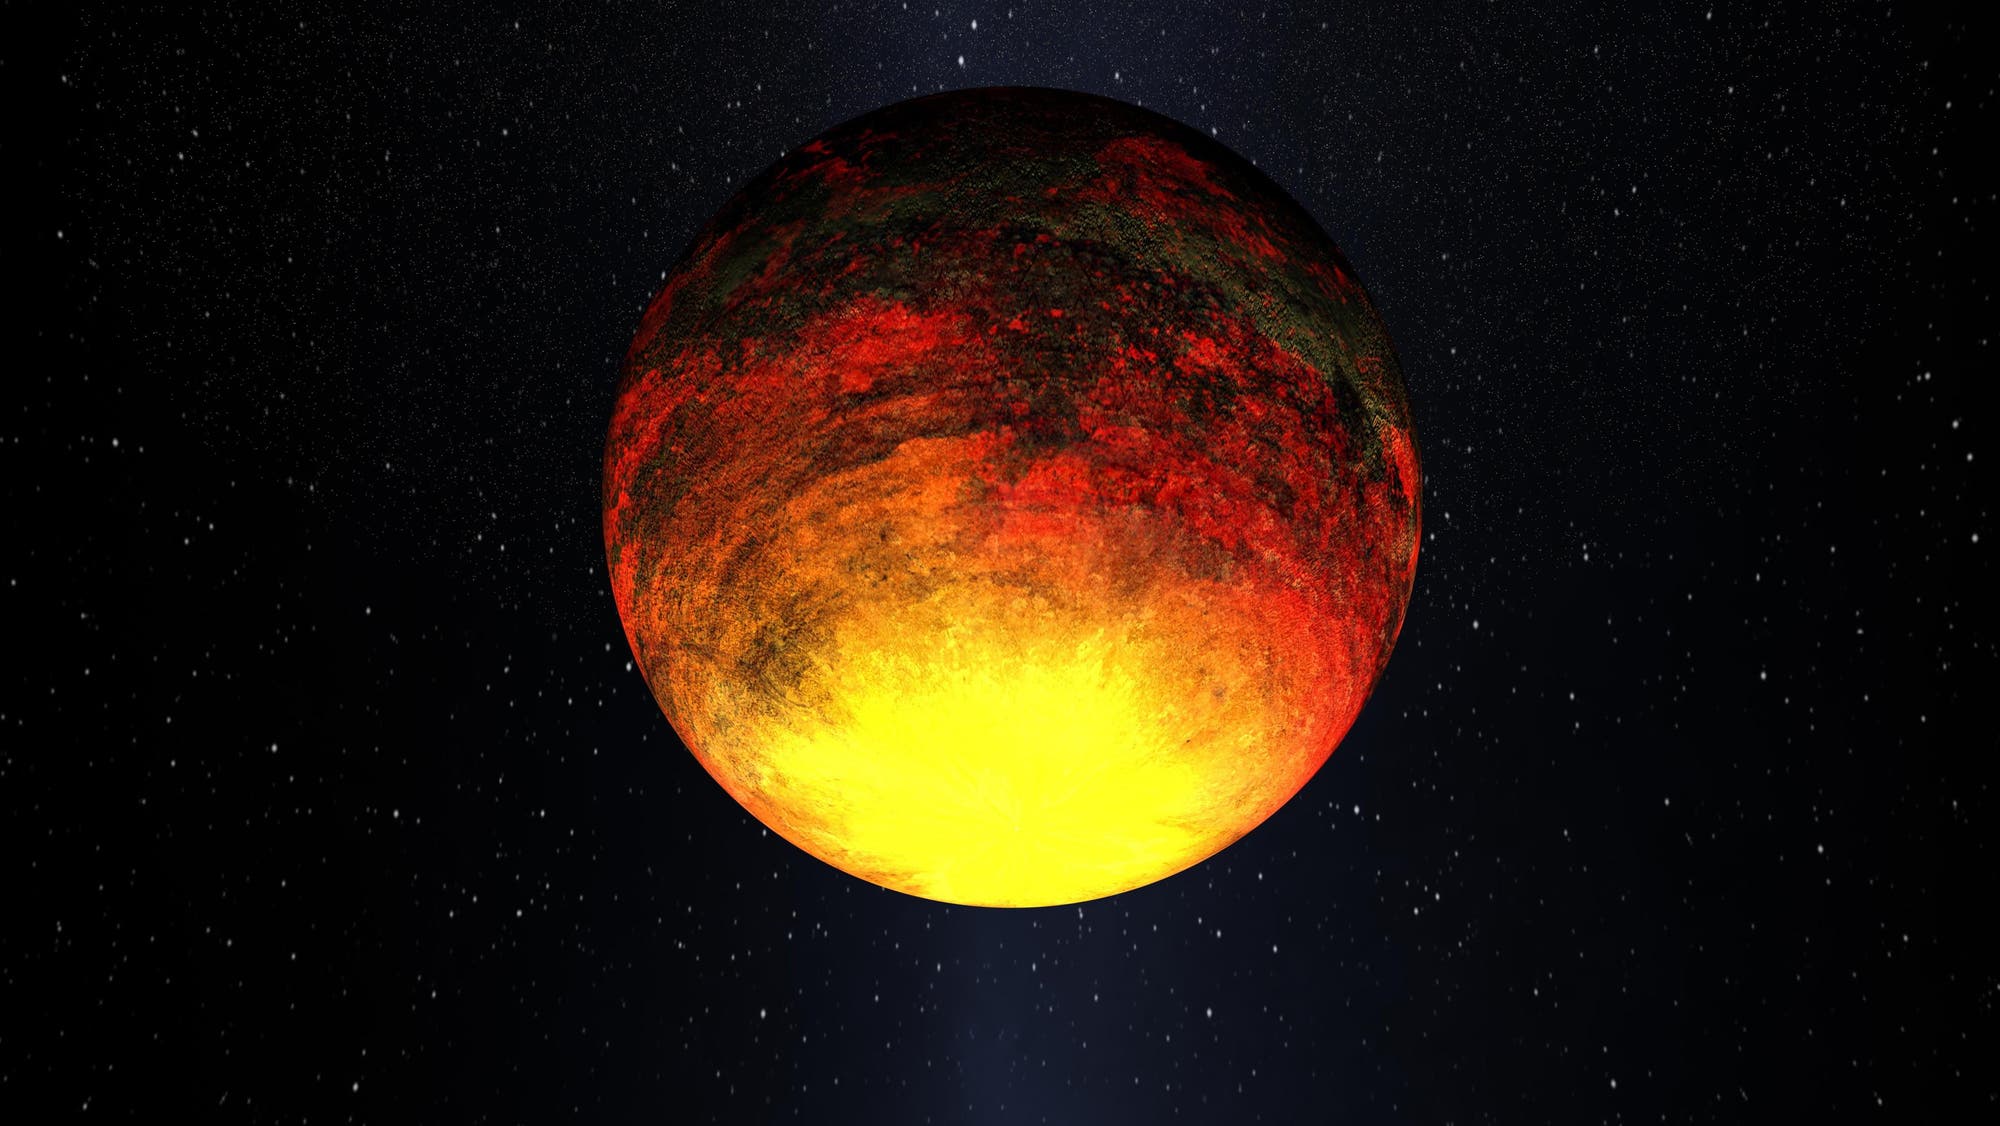 Exoplanet Kepler-10b